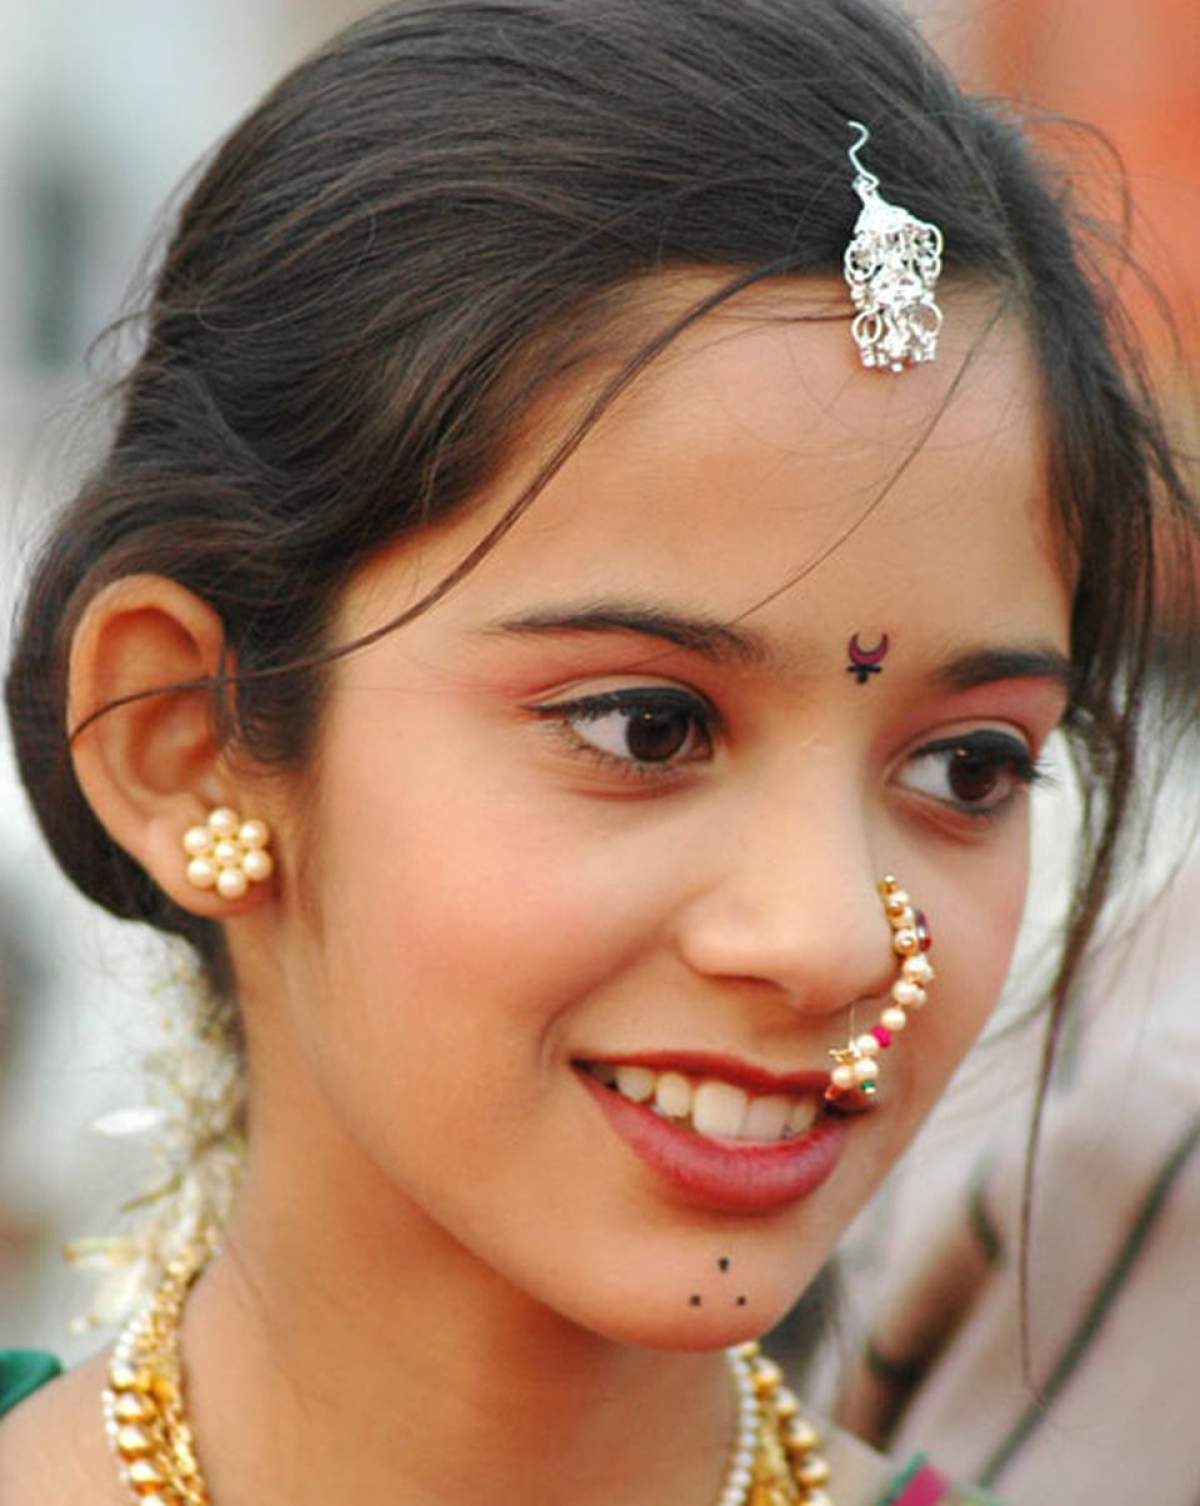 Şocant! O fetiţă din India a divorţat la 8 ani, după o căsnicie de 4 ani!